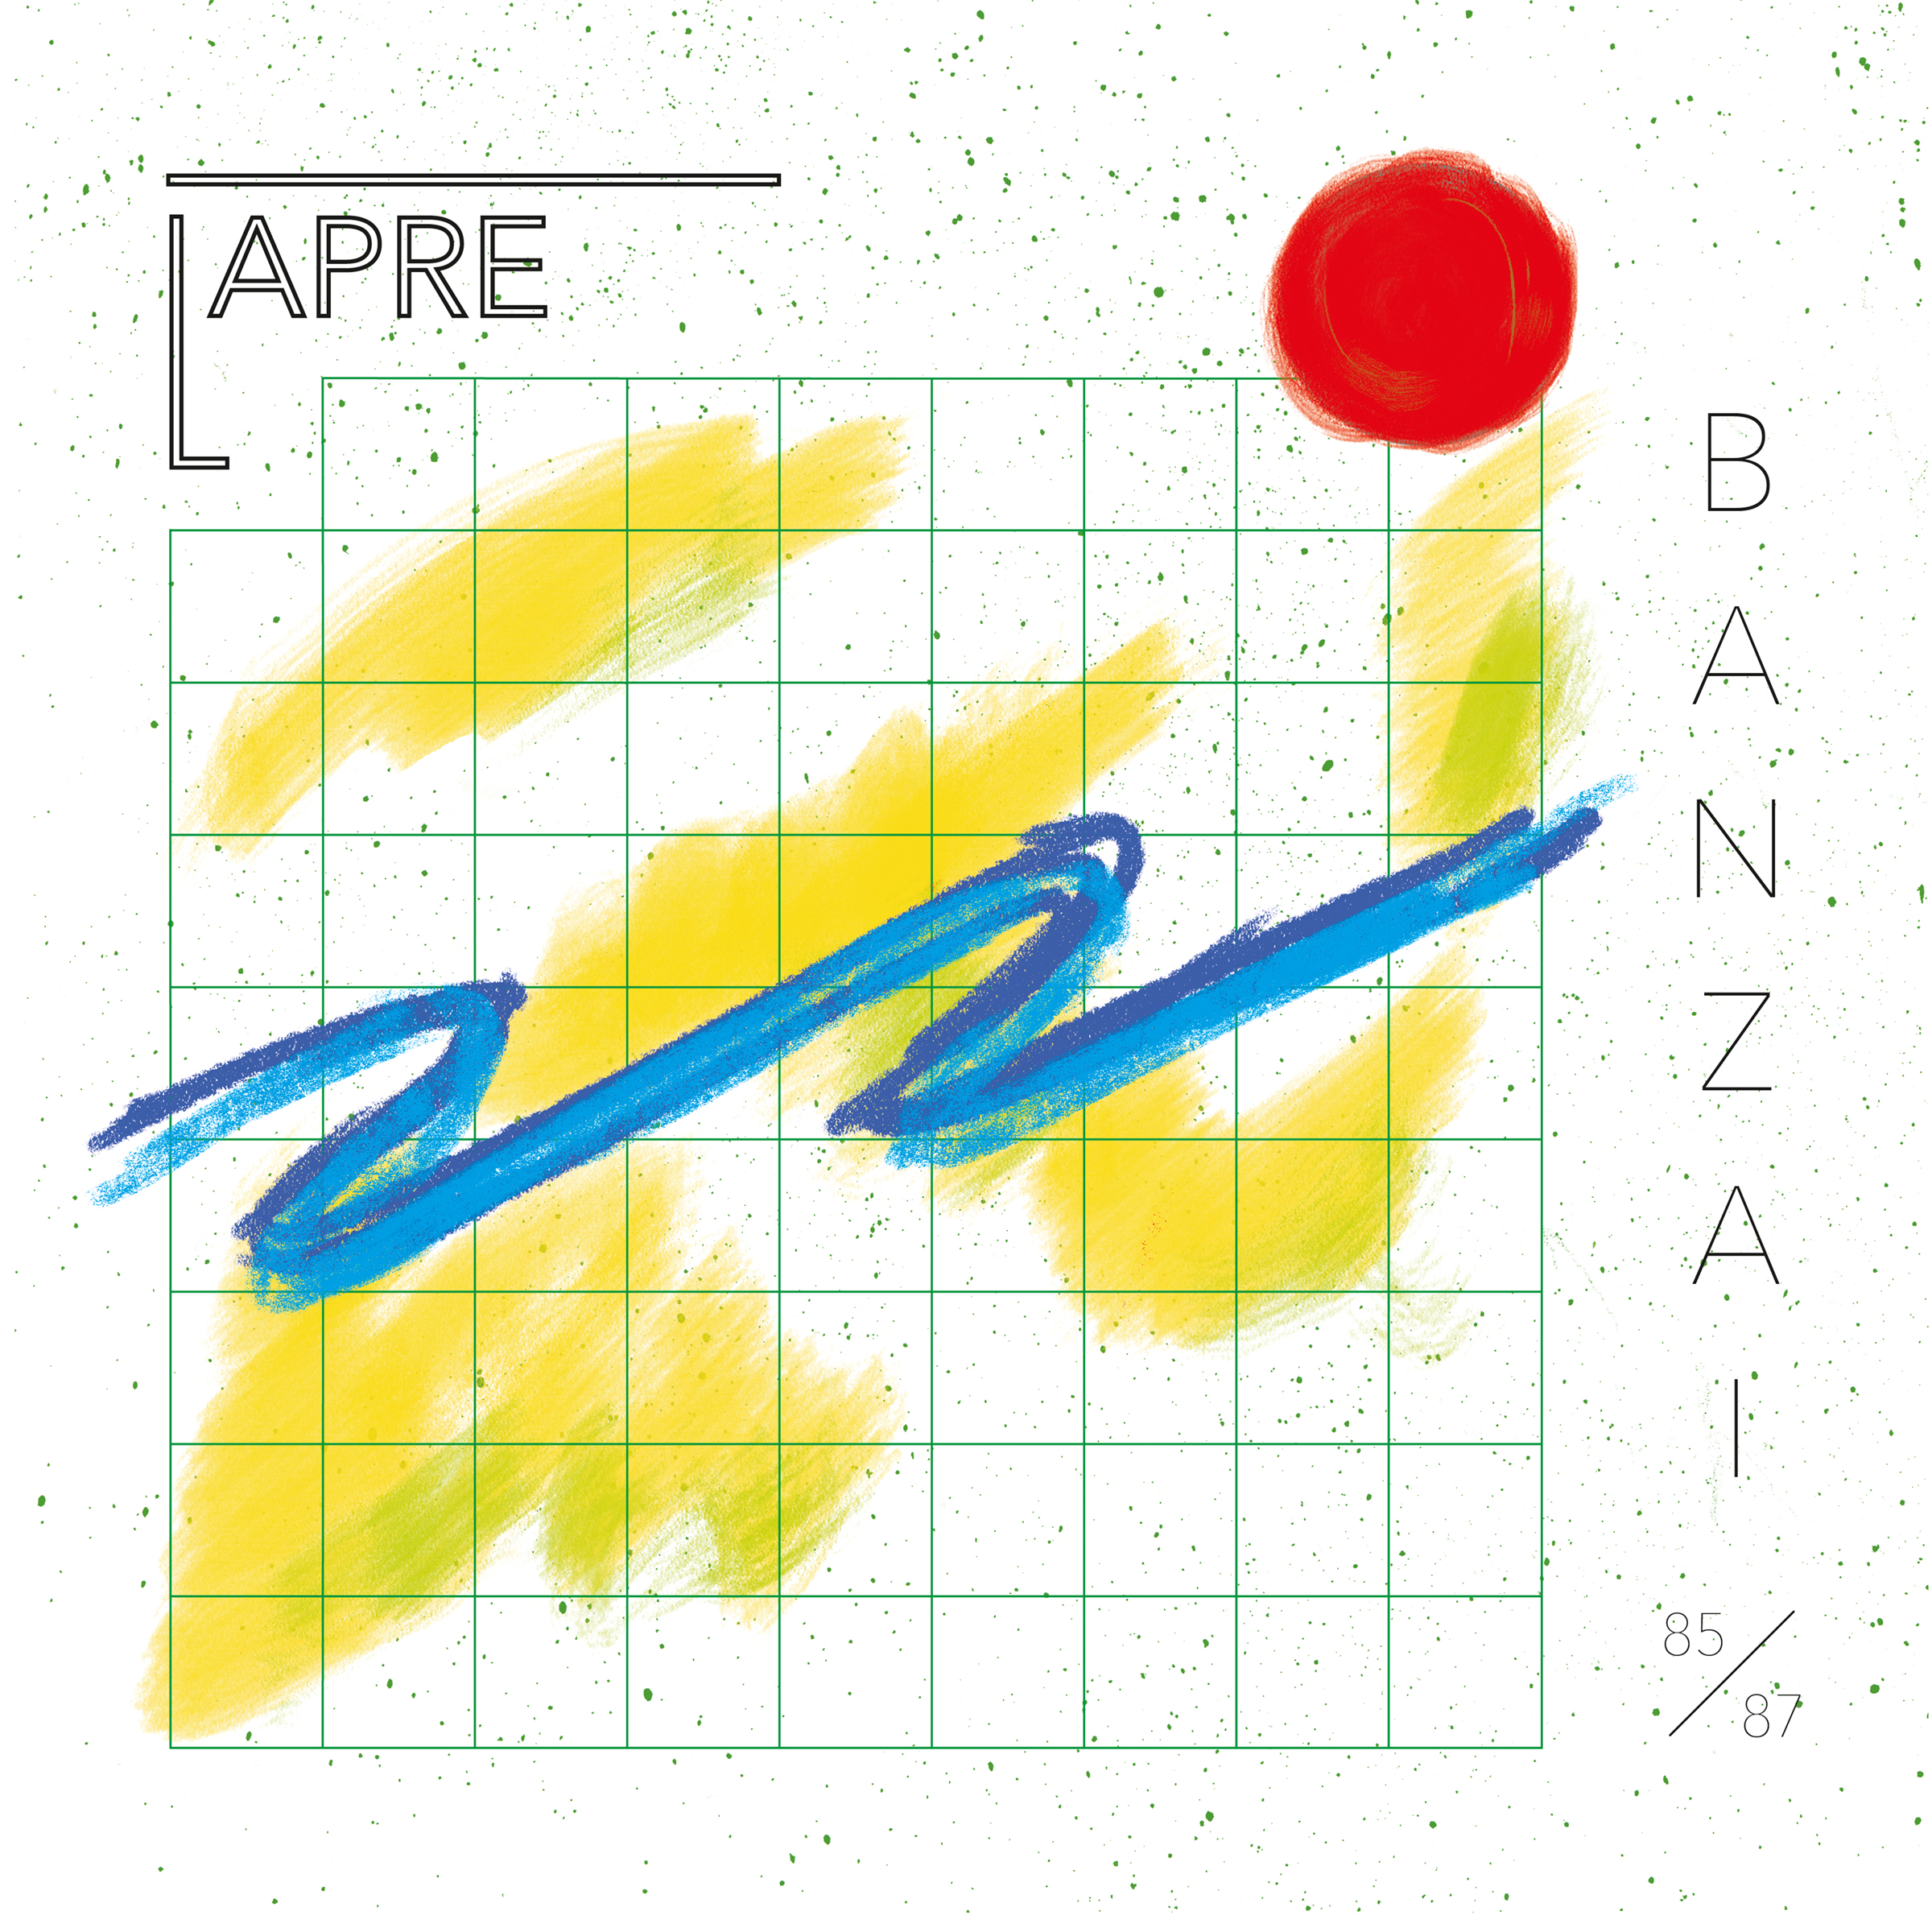 Lapre - Banzai (Elektronische Musik aus Berlin 1985 - 87)